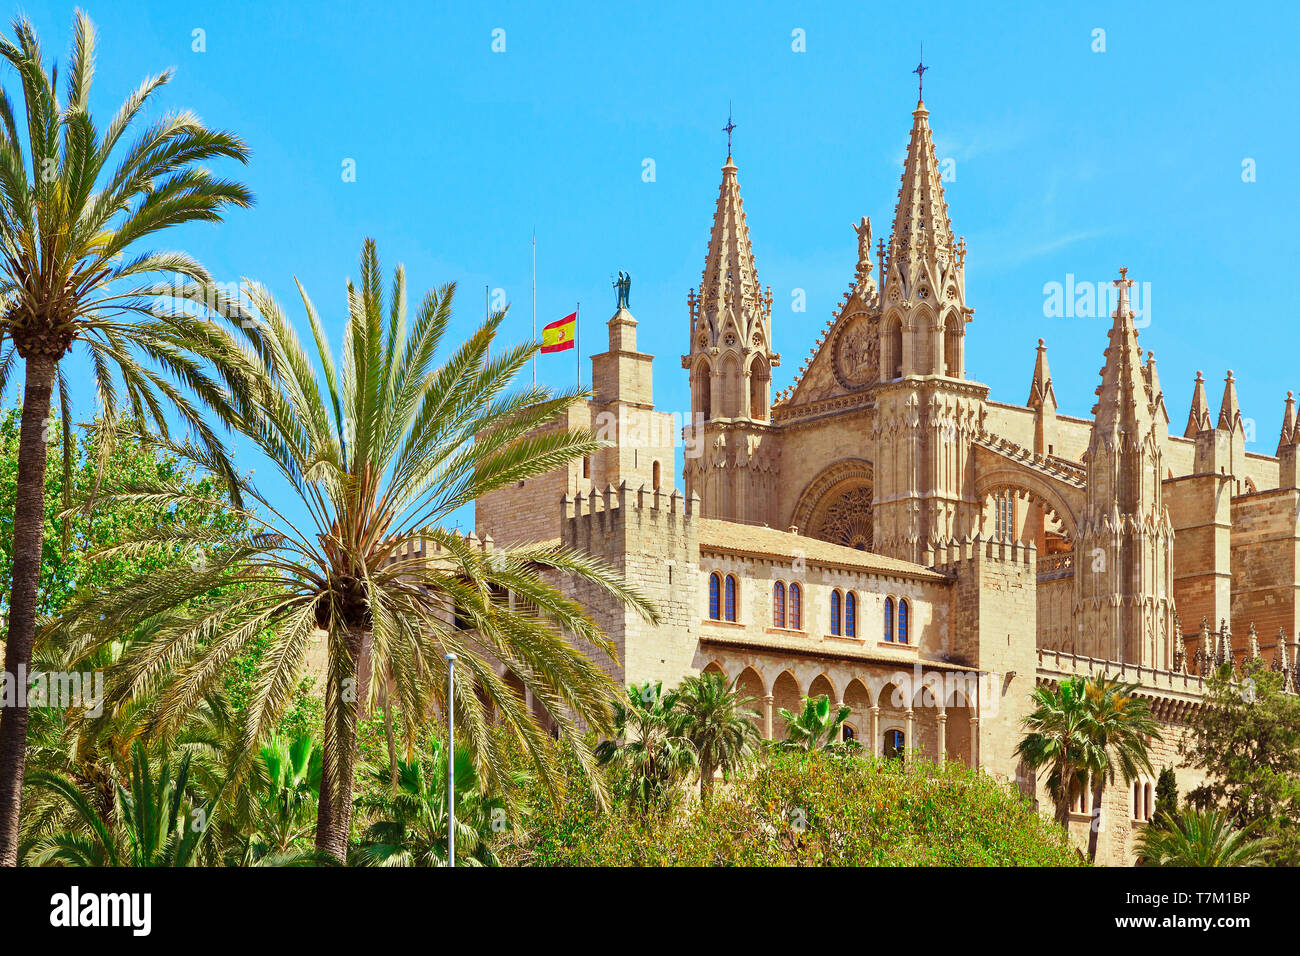 Palma cathedral Majorca Mallorca Spain Stock Photo